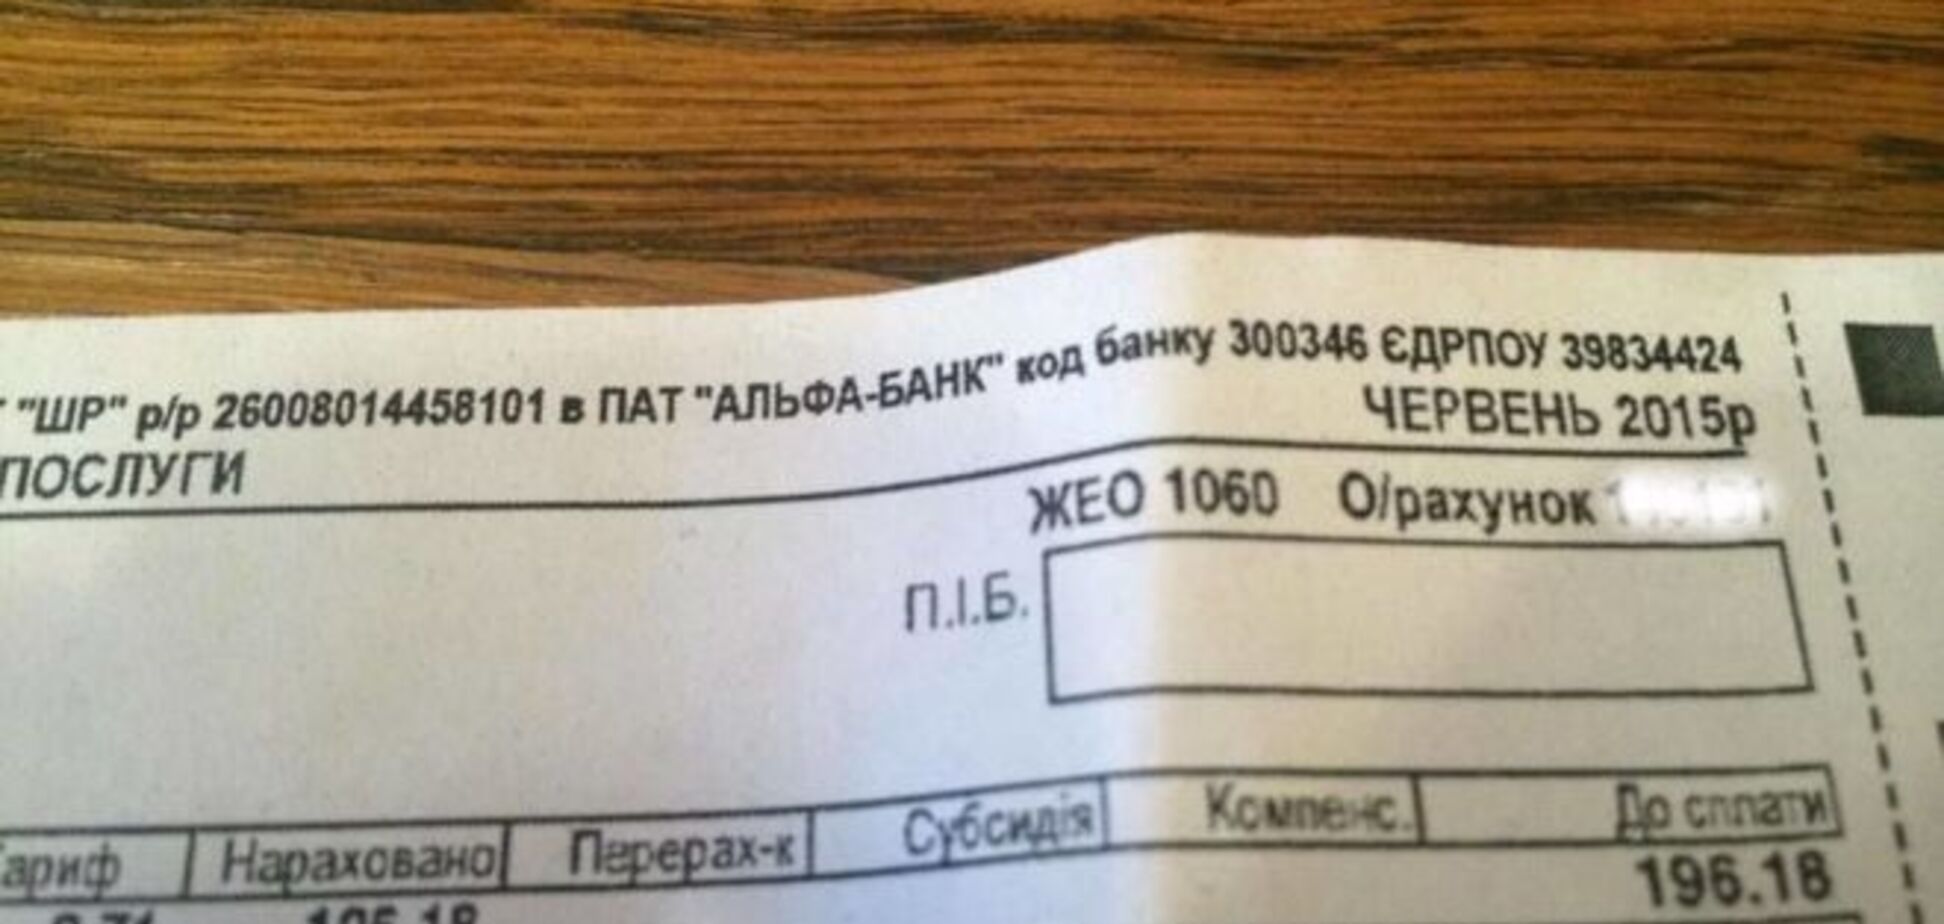 Подделка платежек в Киеве: фальшивки обнаружили в 13 жилых домах